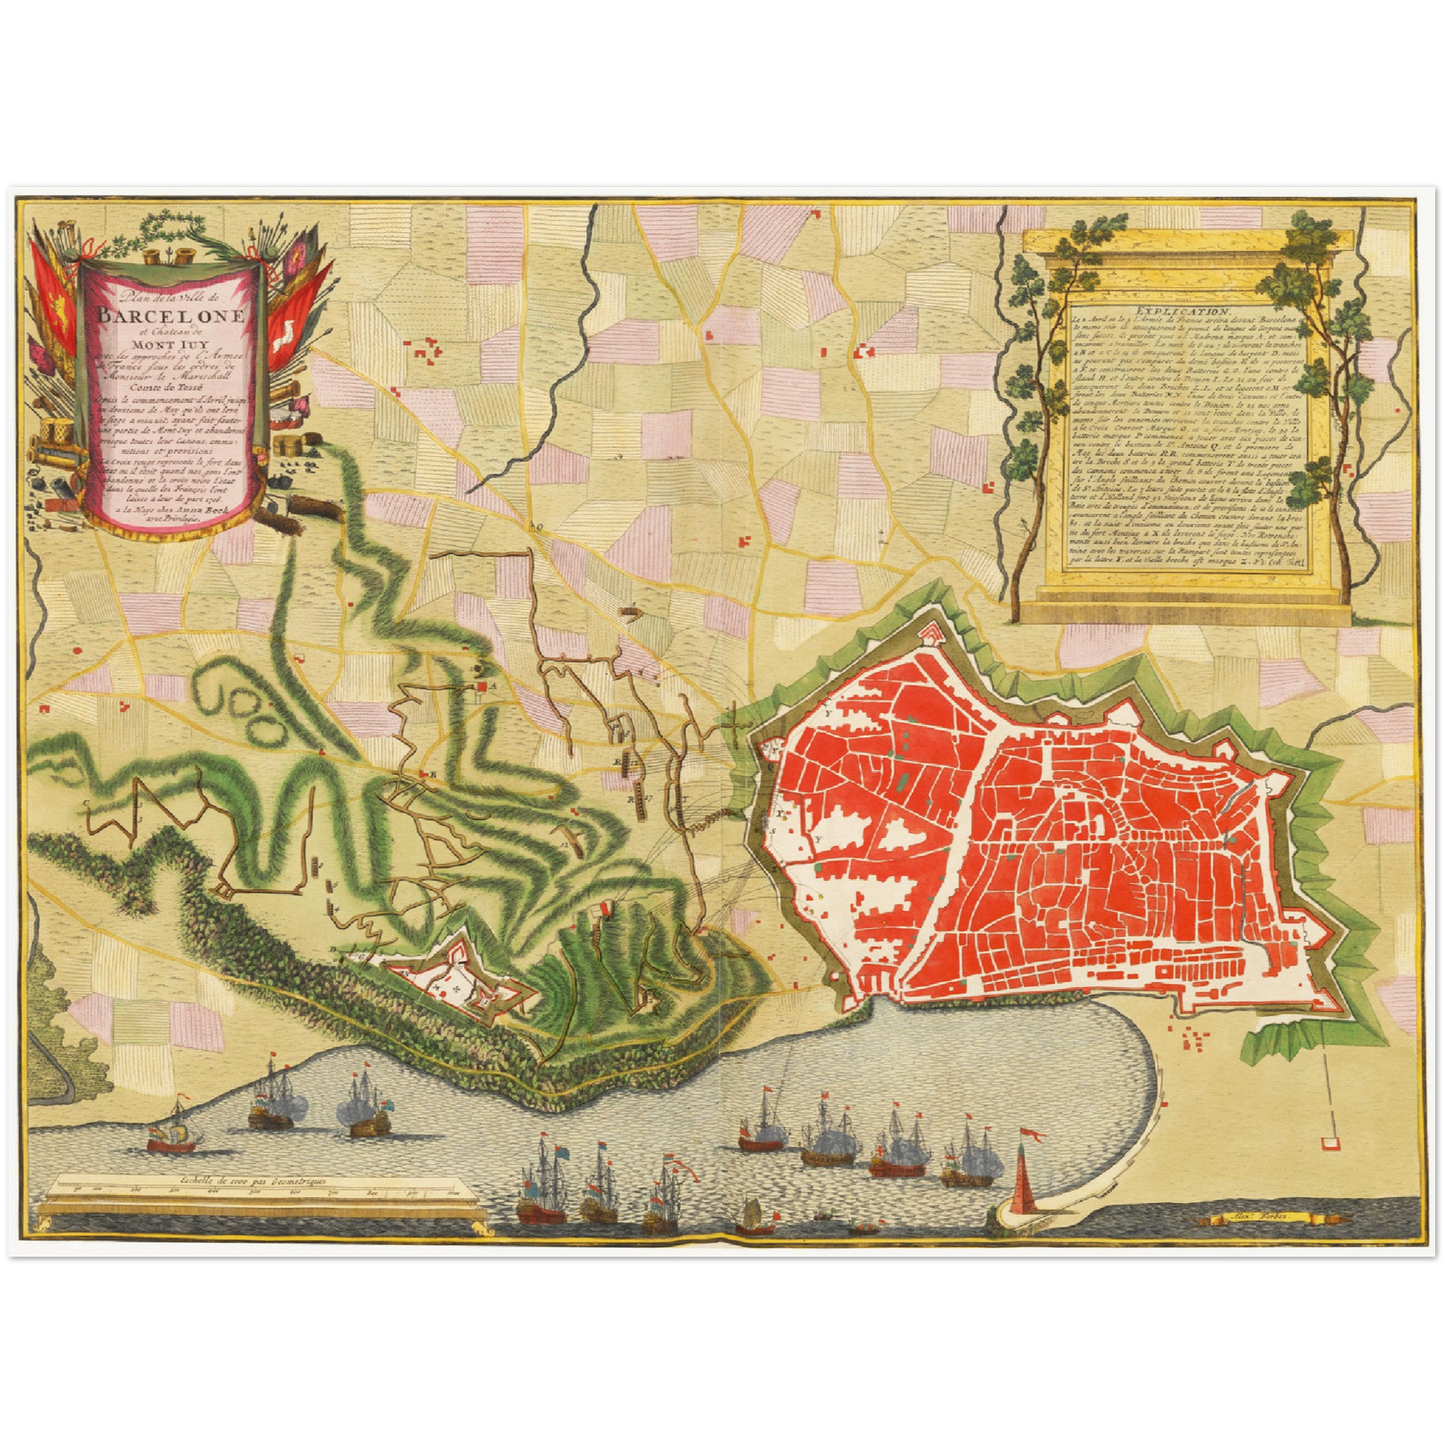 Historischer Stadtplan Barcelona um 1700